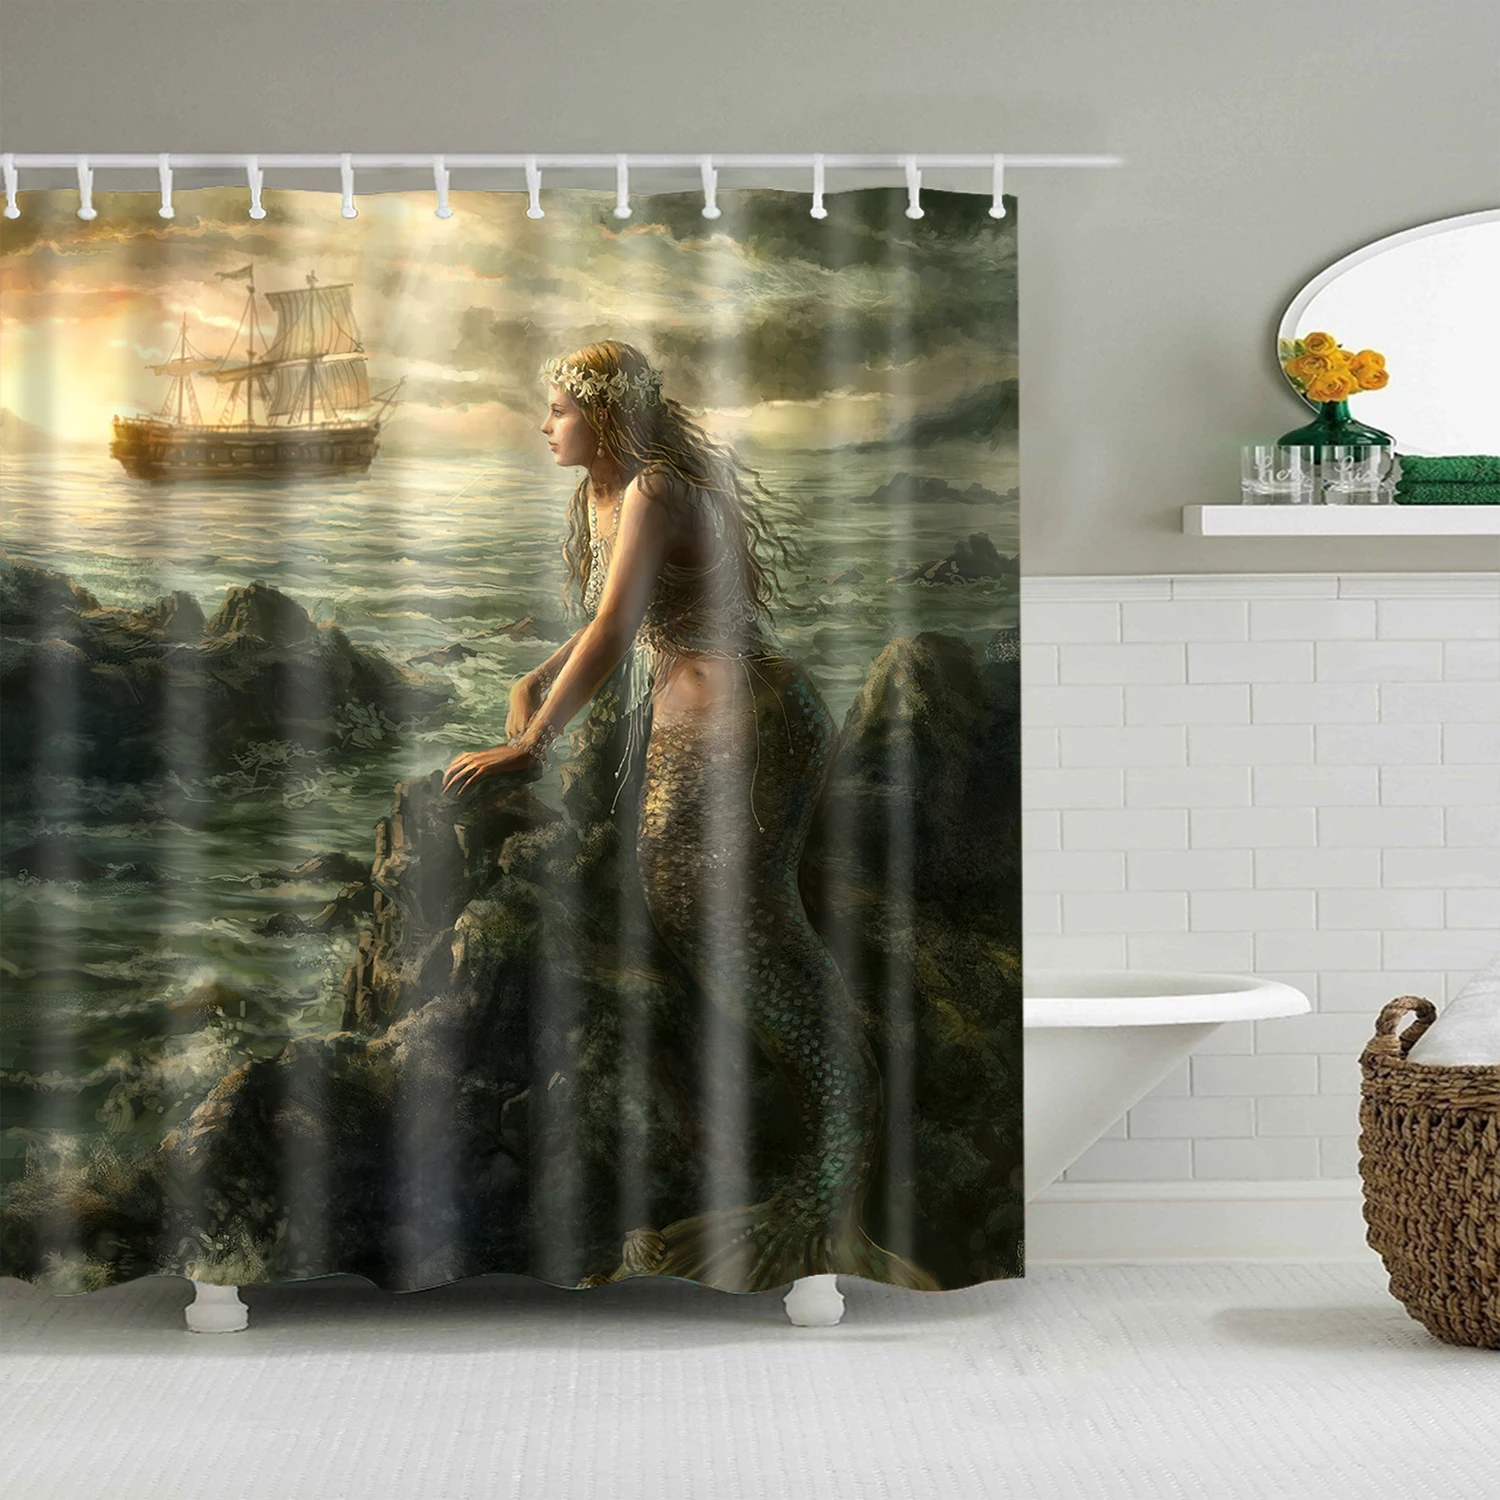 Картина маслом фантазия женщина портрет занавеска для душа s для ванной водонепроницаемый пользовательский ванная комната занавеска ткань для детской ванной Декор - Color: 16